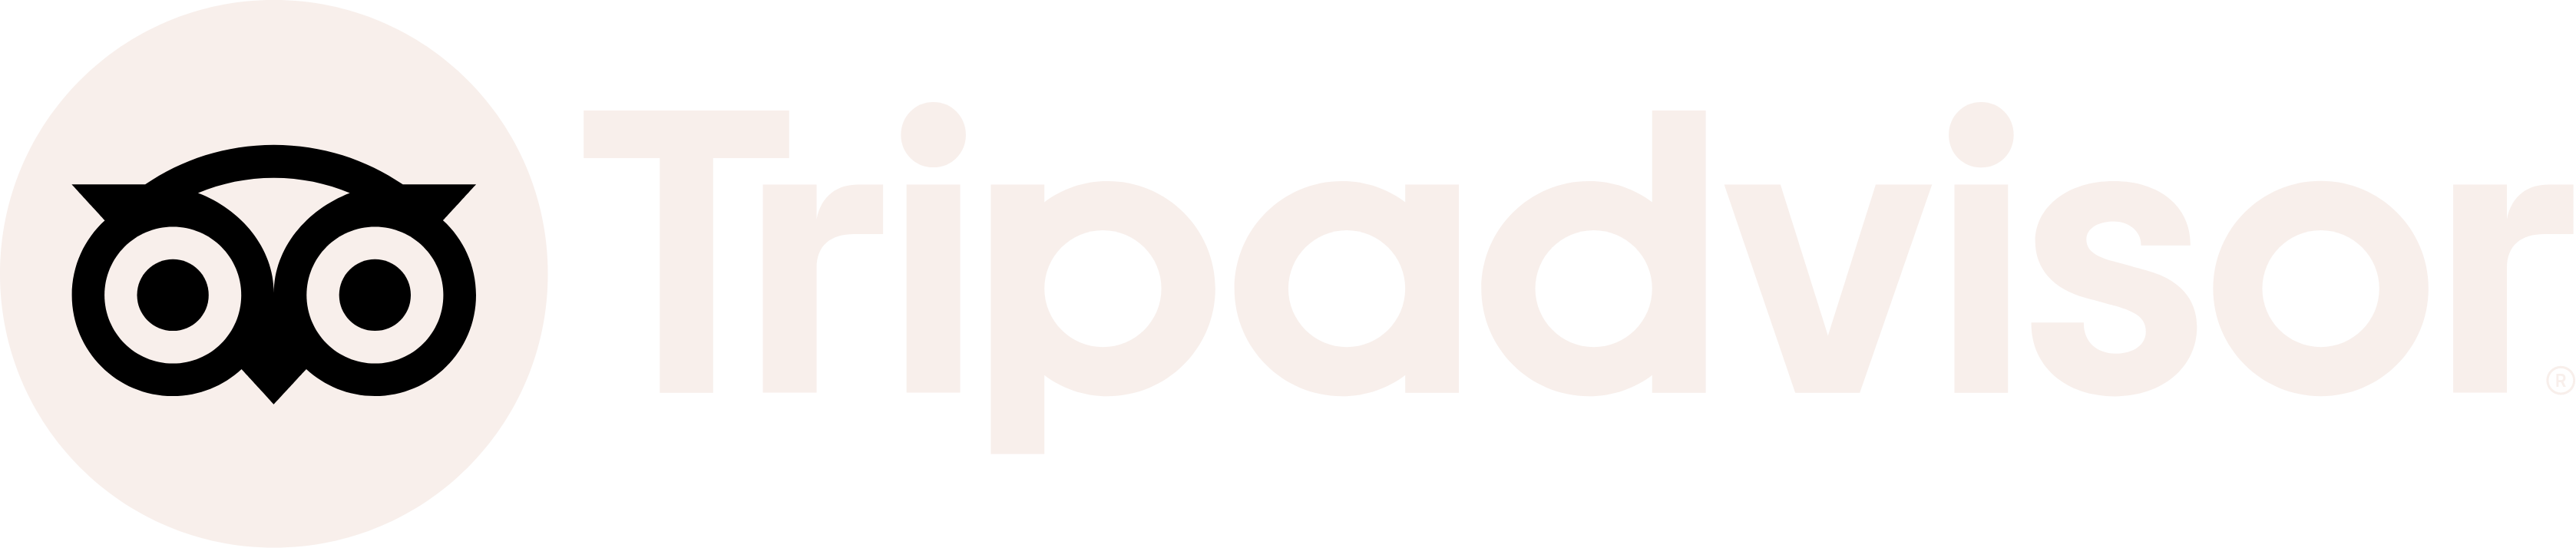 TripAdvisor logo large for dark backgrounds (transparent PNG)